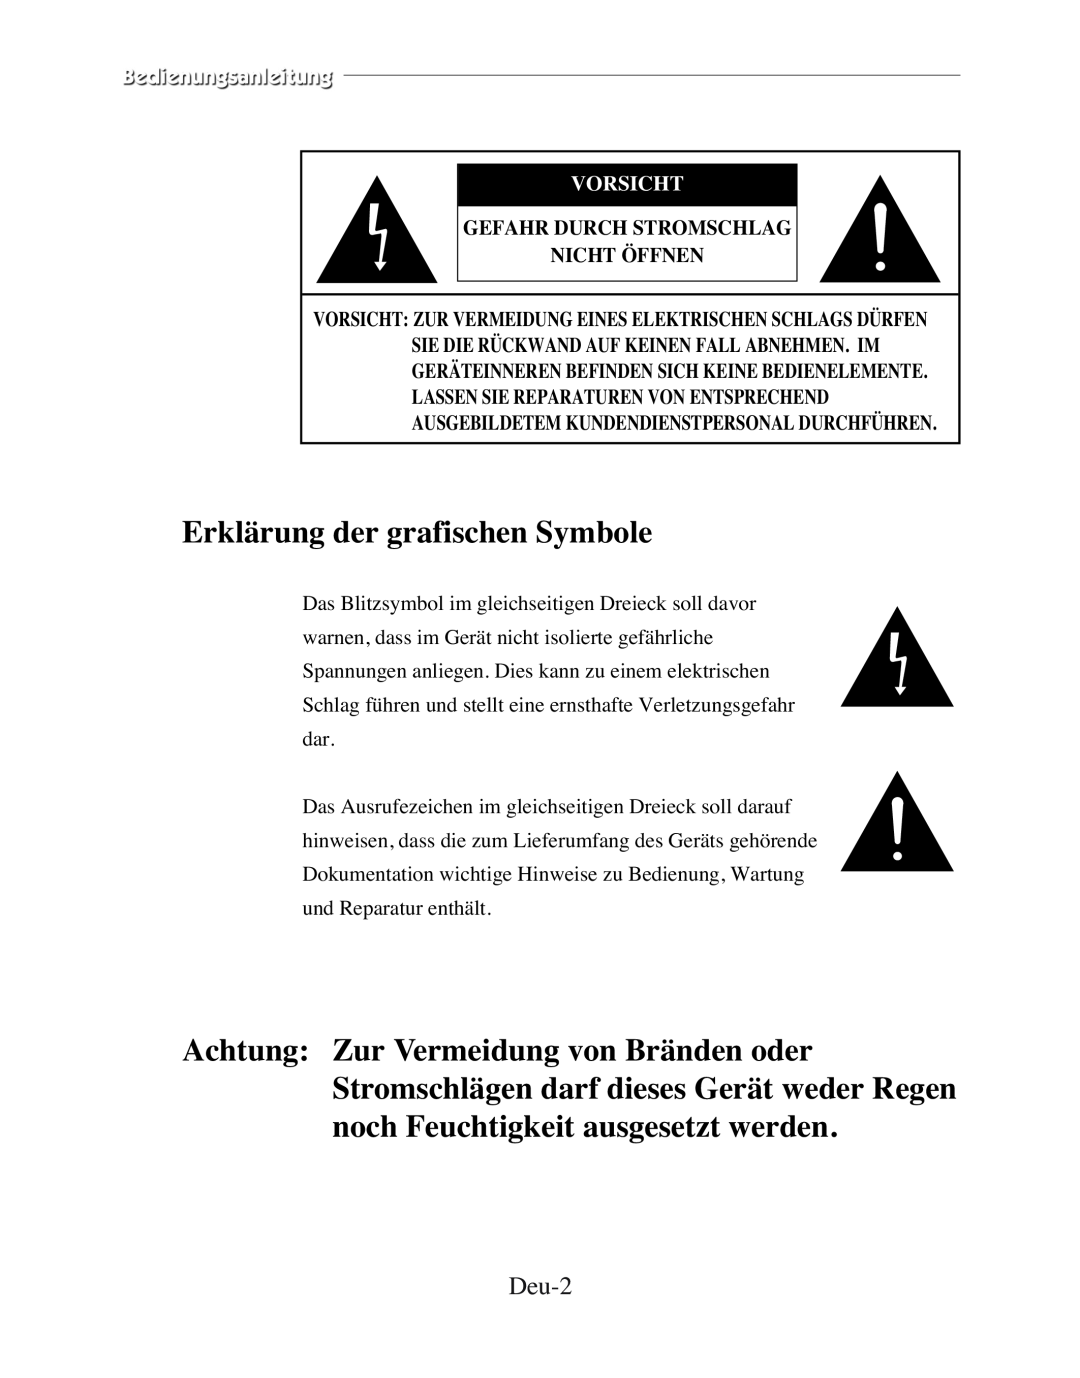 Samsung SMC-210FP, SMC-152FP manual Erklärung der grafischen Symbole, Deu-2, Vorsicht, Gefahr Durch Stromschlag Nicht Öffnen 